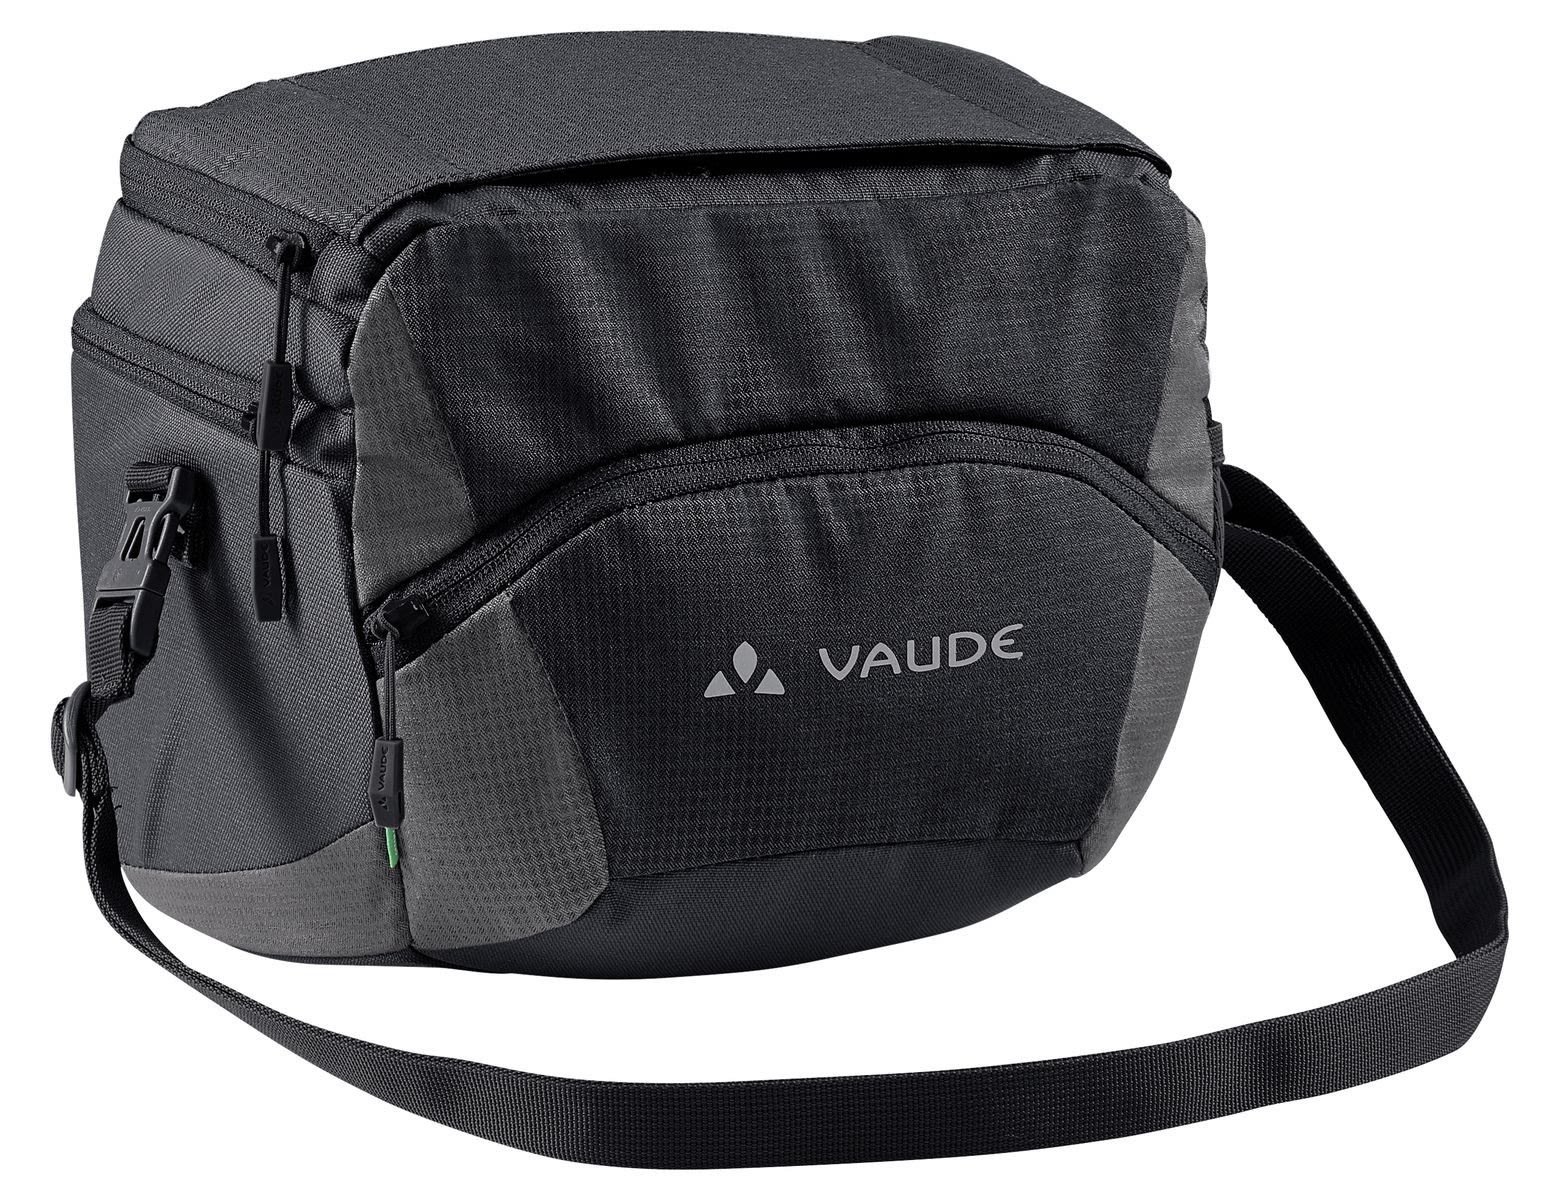 Vaude Ontour BOX L (Klickfix Ready) Schwarz- Taschen- Grsse 6l - Farbe Black